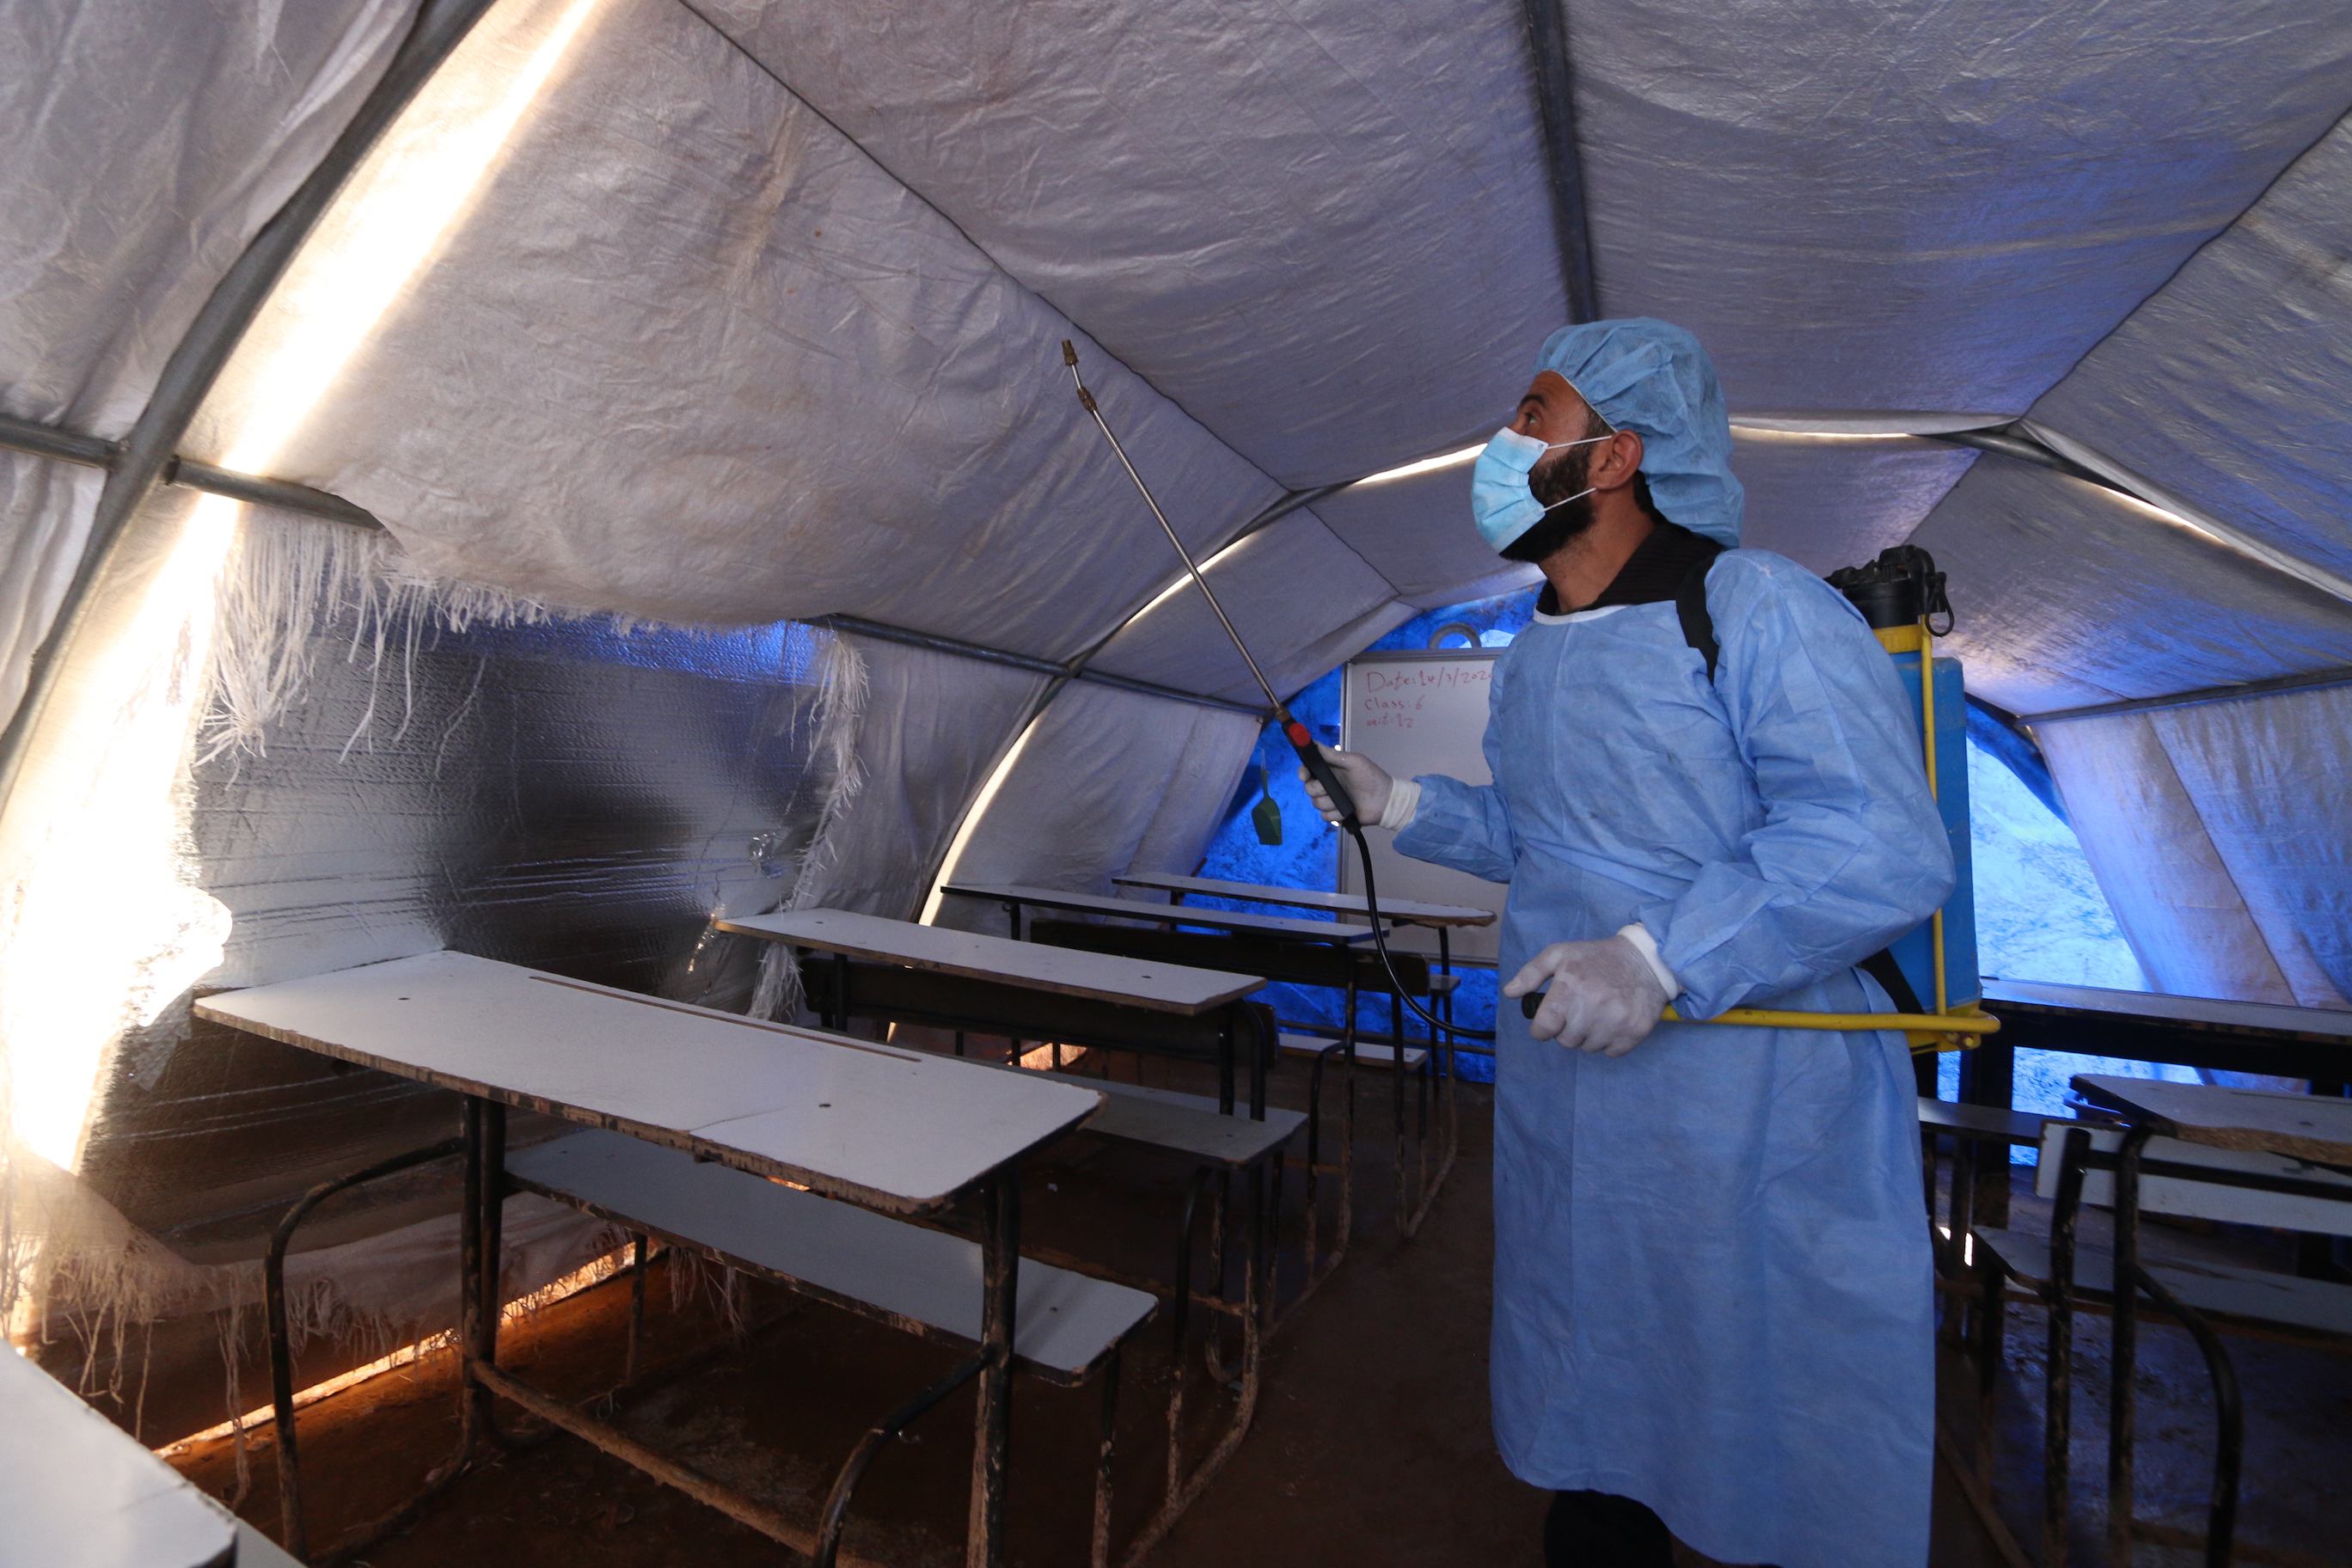 عمال الإغاثة في مخيم أطمة للاجئين يقومون برش مطهر على الأسطح لمنع انتشار فيروس كوفيد-19.